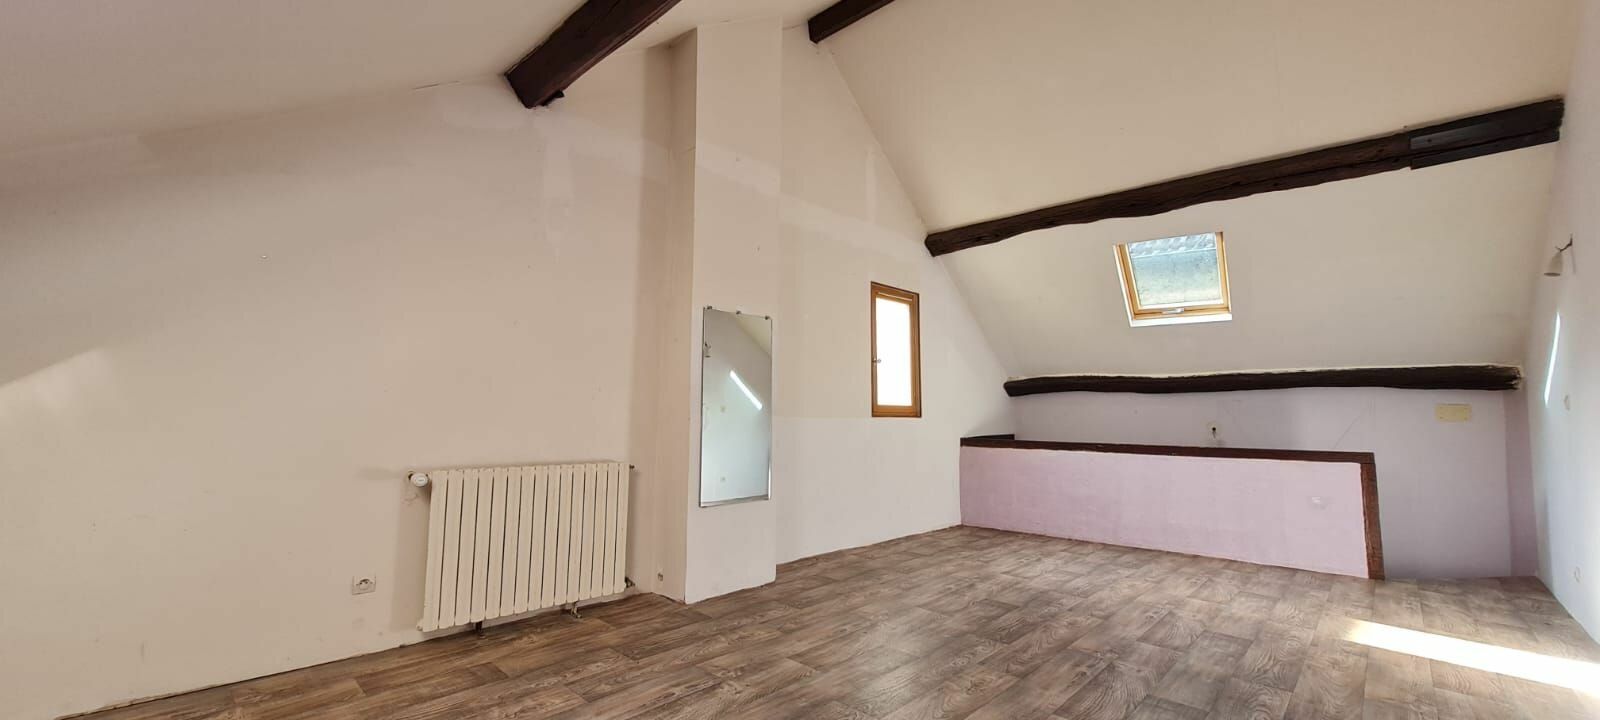 Maison à vendre 2 150m2 à Saâcy-sur-Marne vignette-16